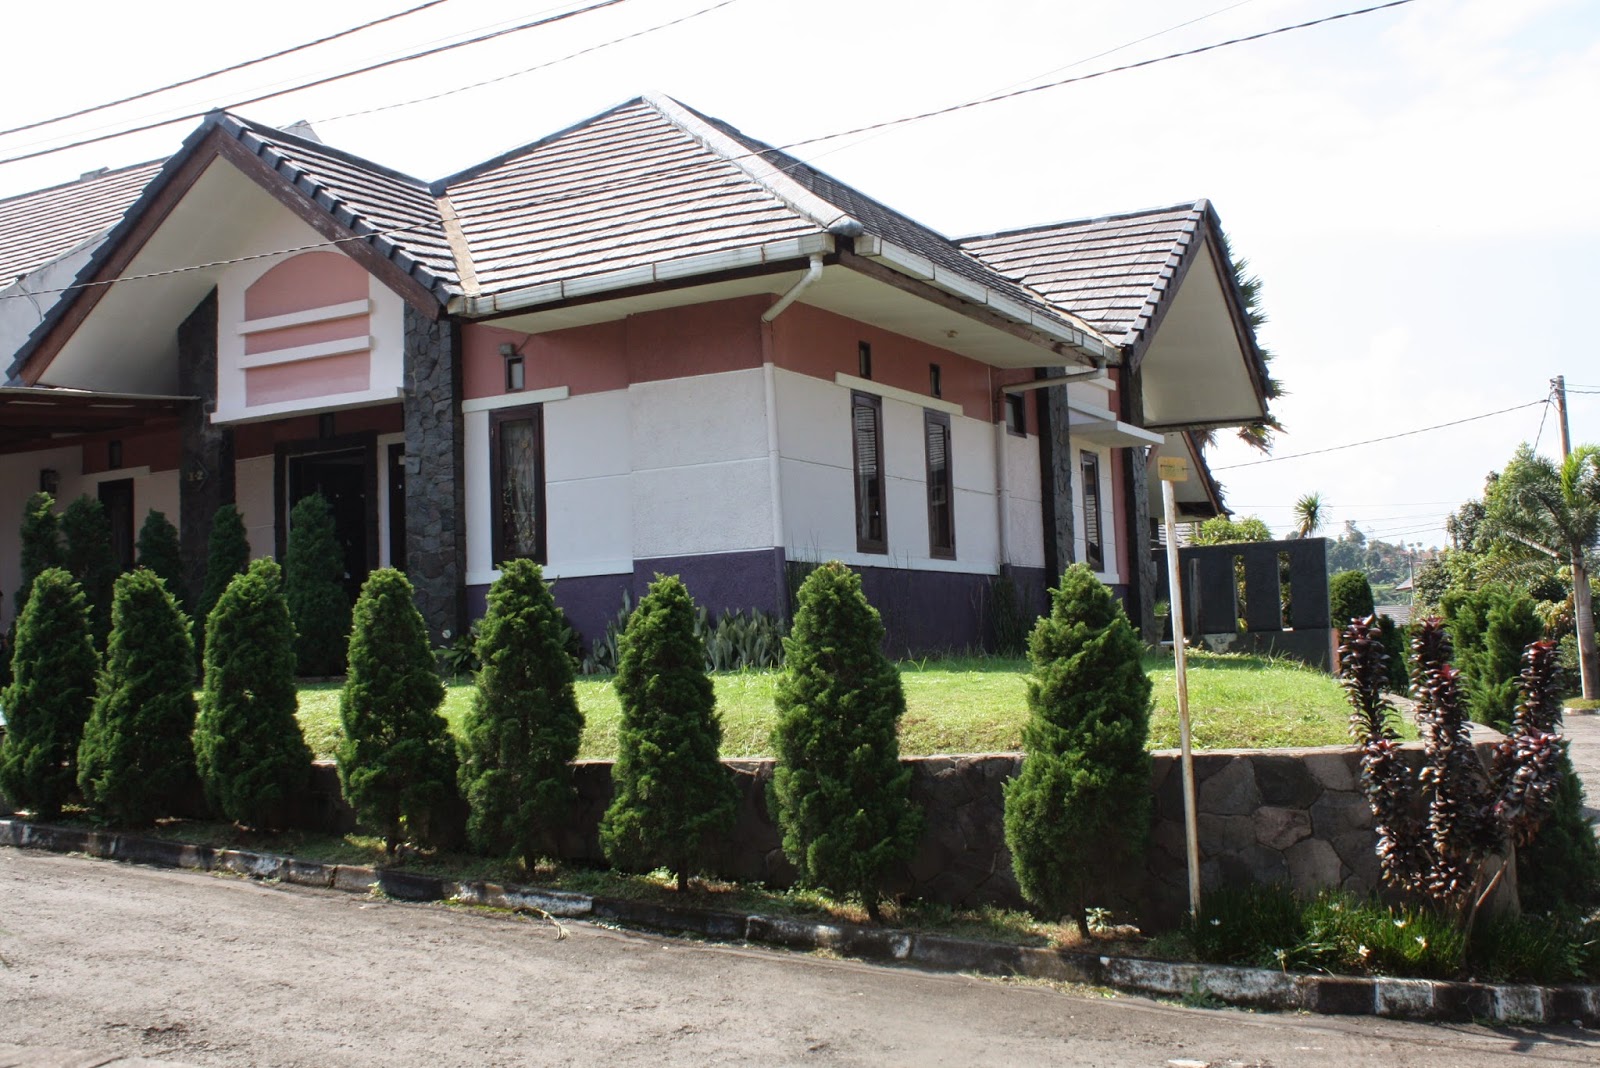  Rumah  Minimalis  Harga  Murah Di  Bandung  Rumah  micromalis